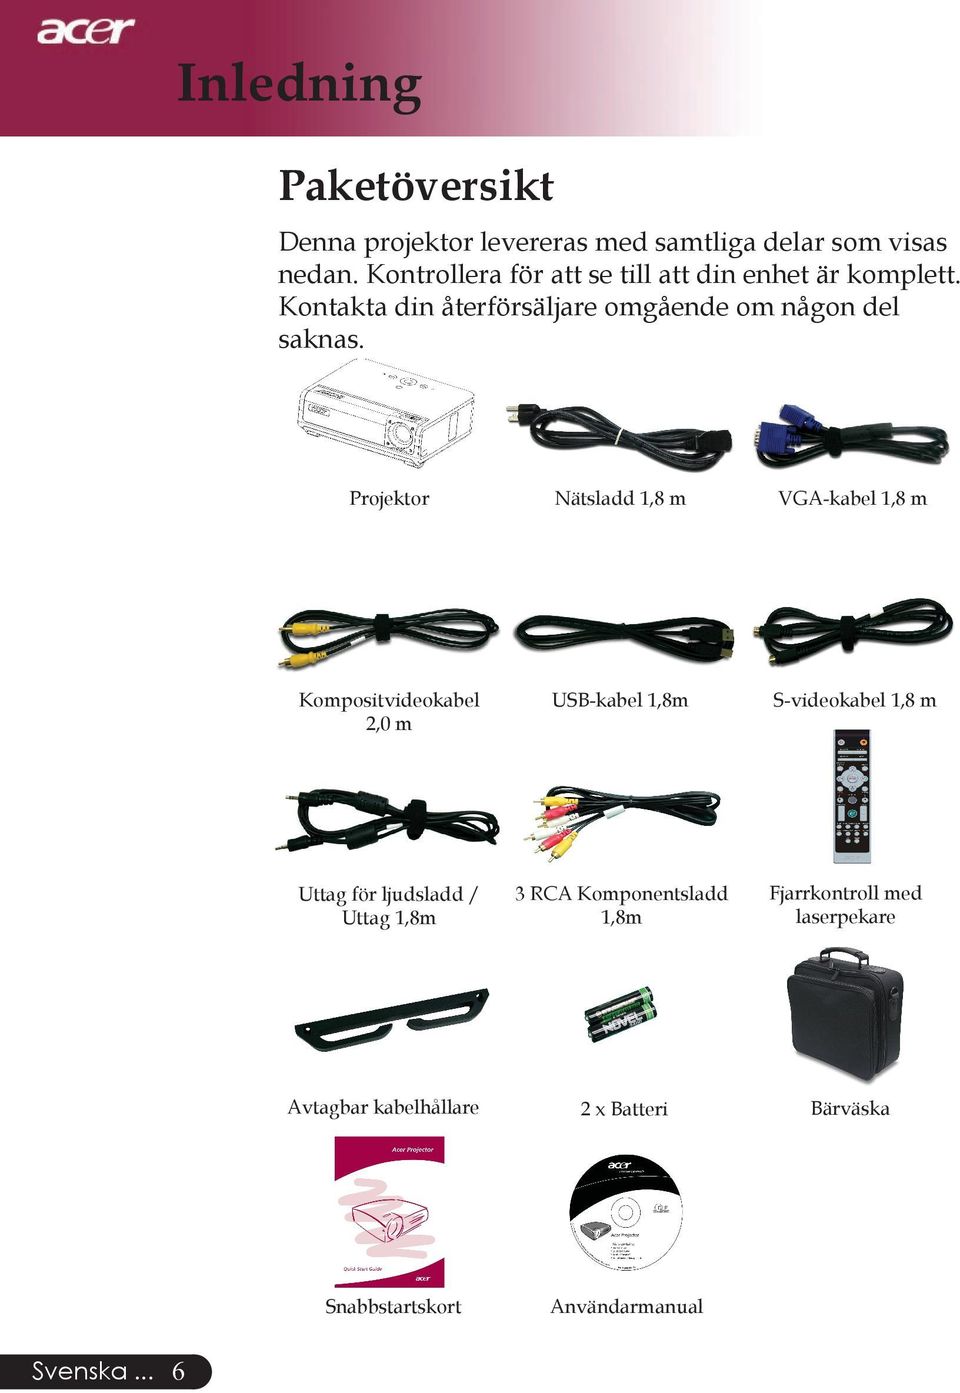 Projektor Nätsladd 1,8 m VGA-kabel 1,8 m Kompositvideokabel 2,0 m USB-kabel 1,8m S-videokabel 1,8 m Uttag för